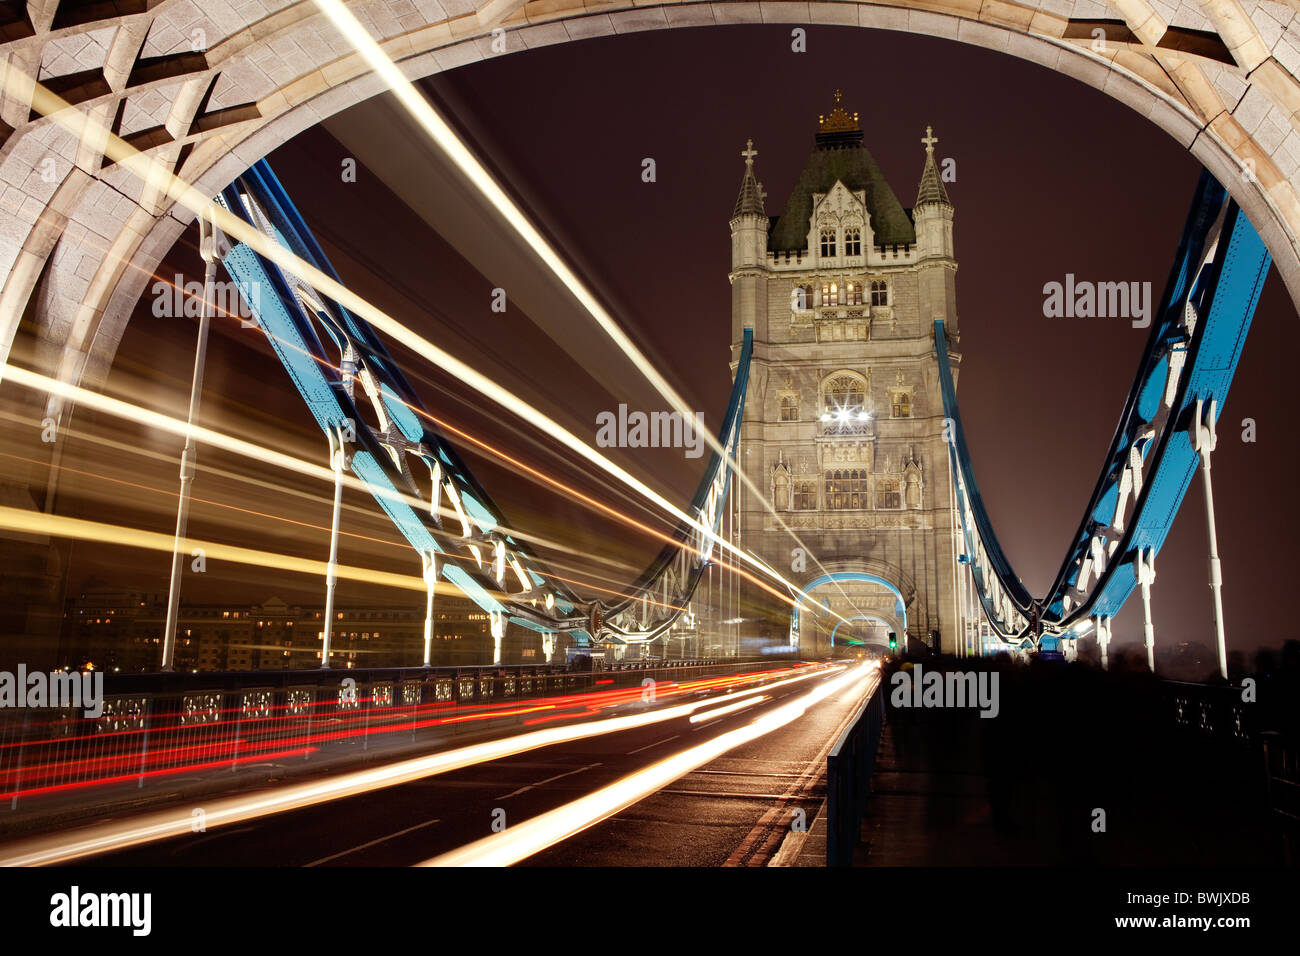 Tower Bridge bei Nacht von innen einen Turm Stockfotografie - Alamy